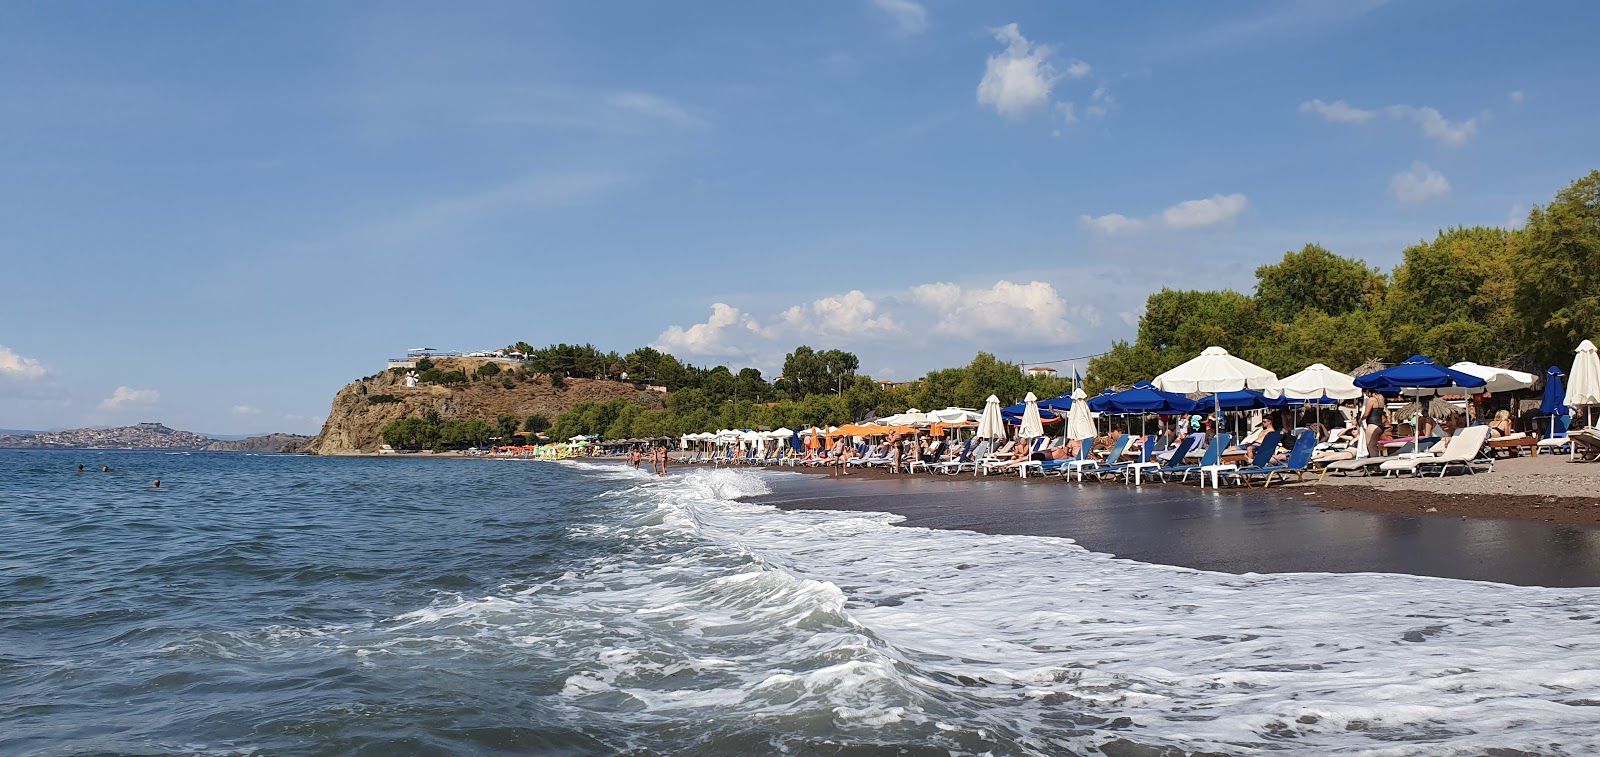 Anaxos Plajı'in fotoğrafı çok temiz temizlik seviyesi ile